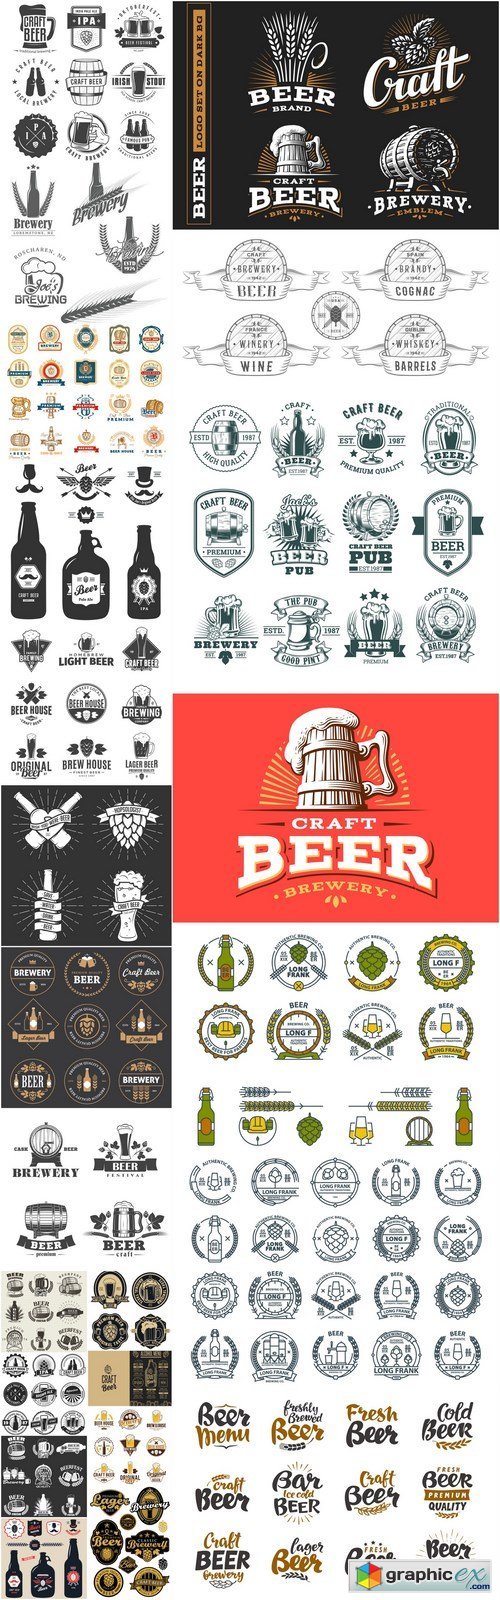 Craft Beer Logo Template #2 - 25 Vector